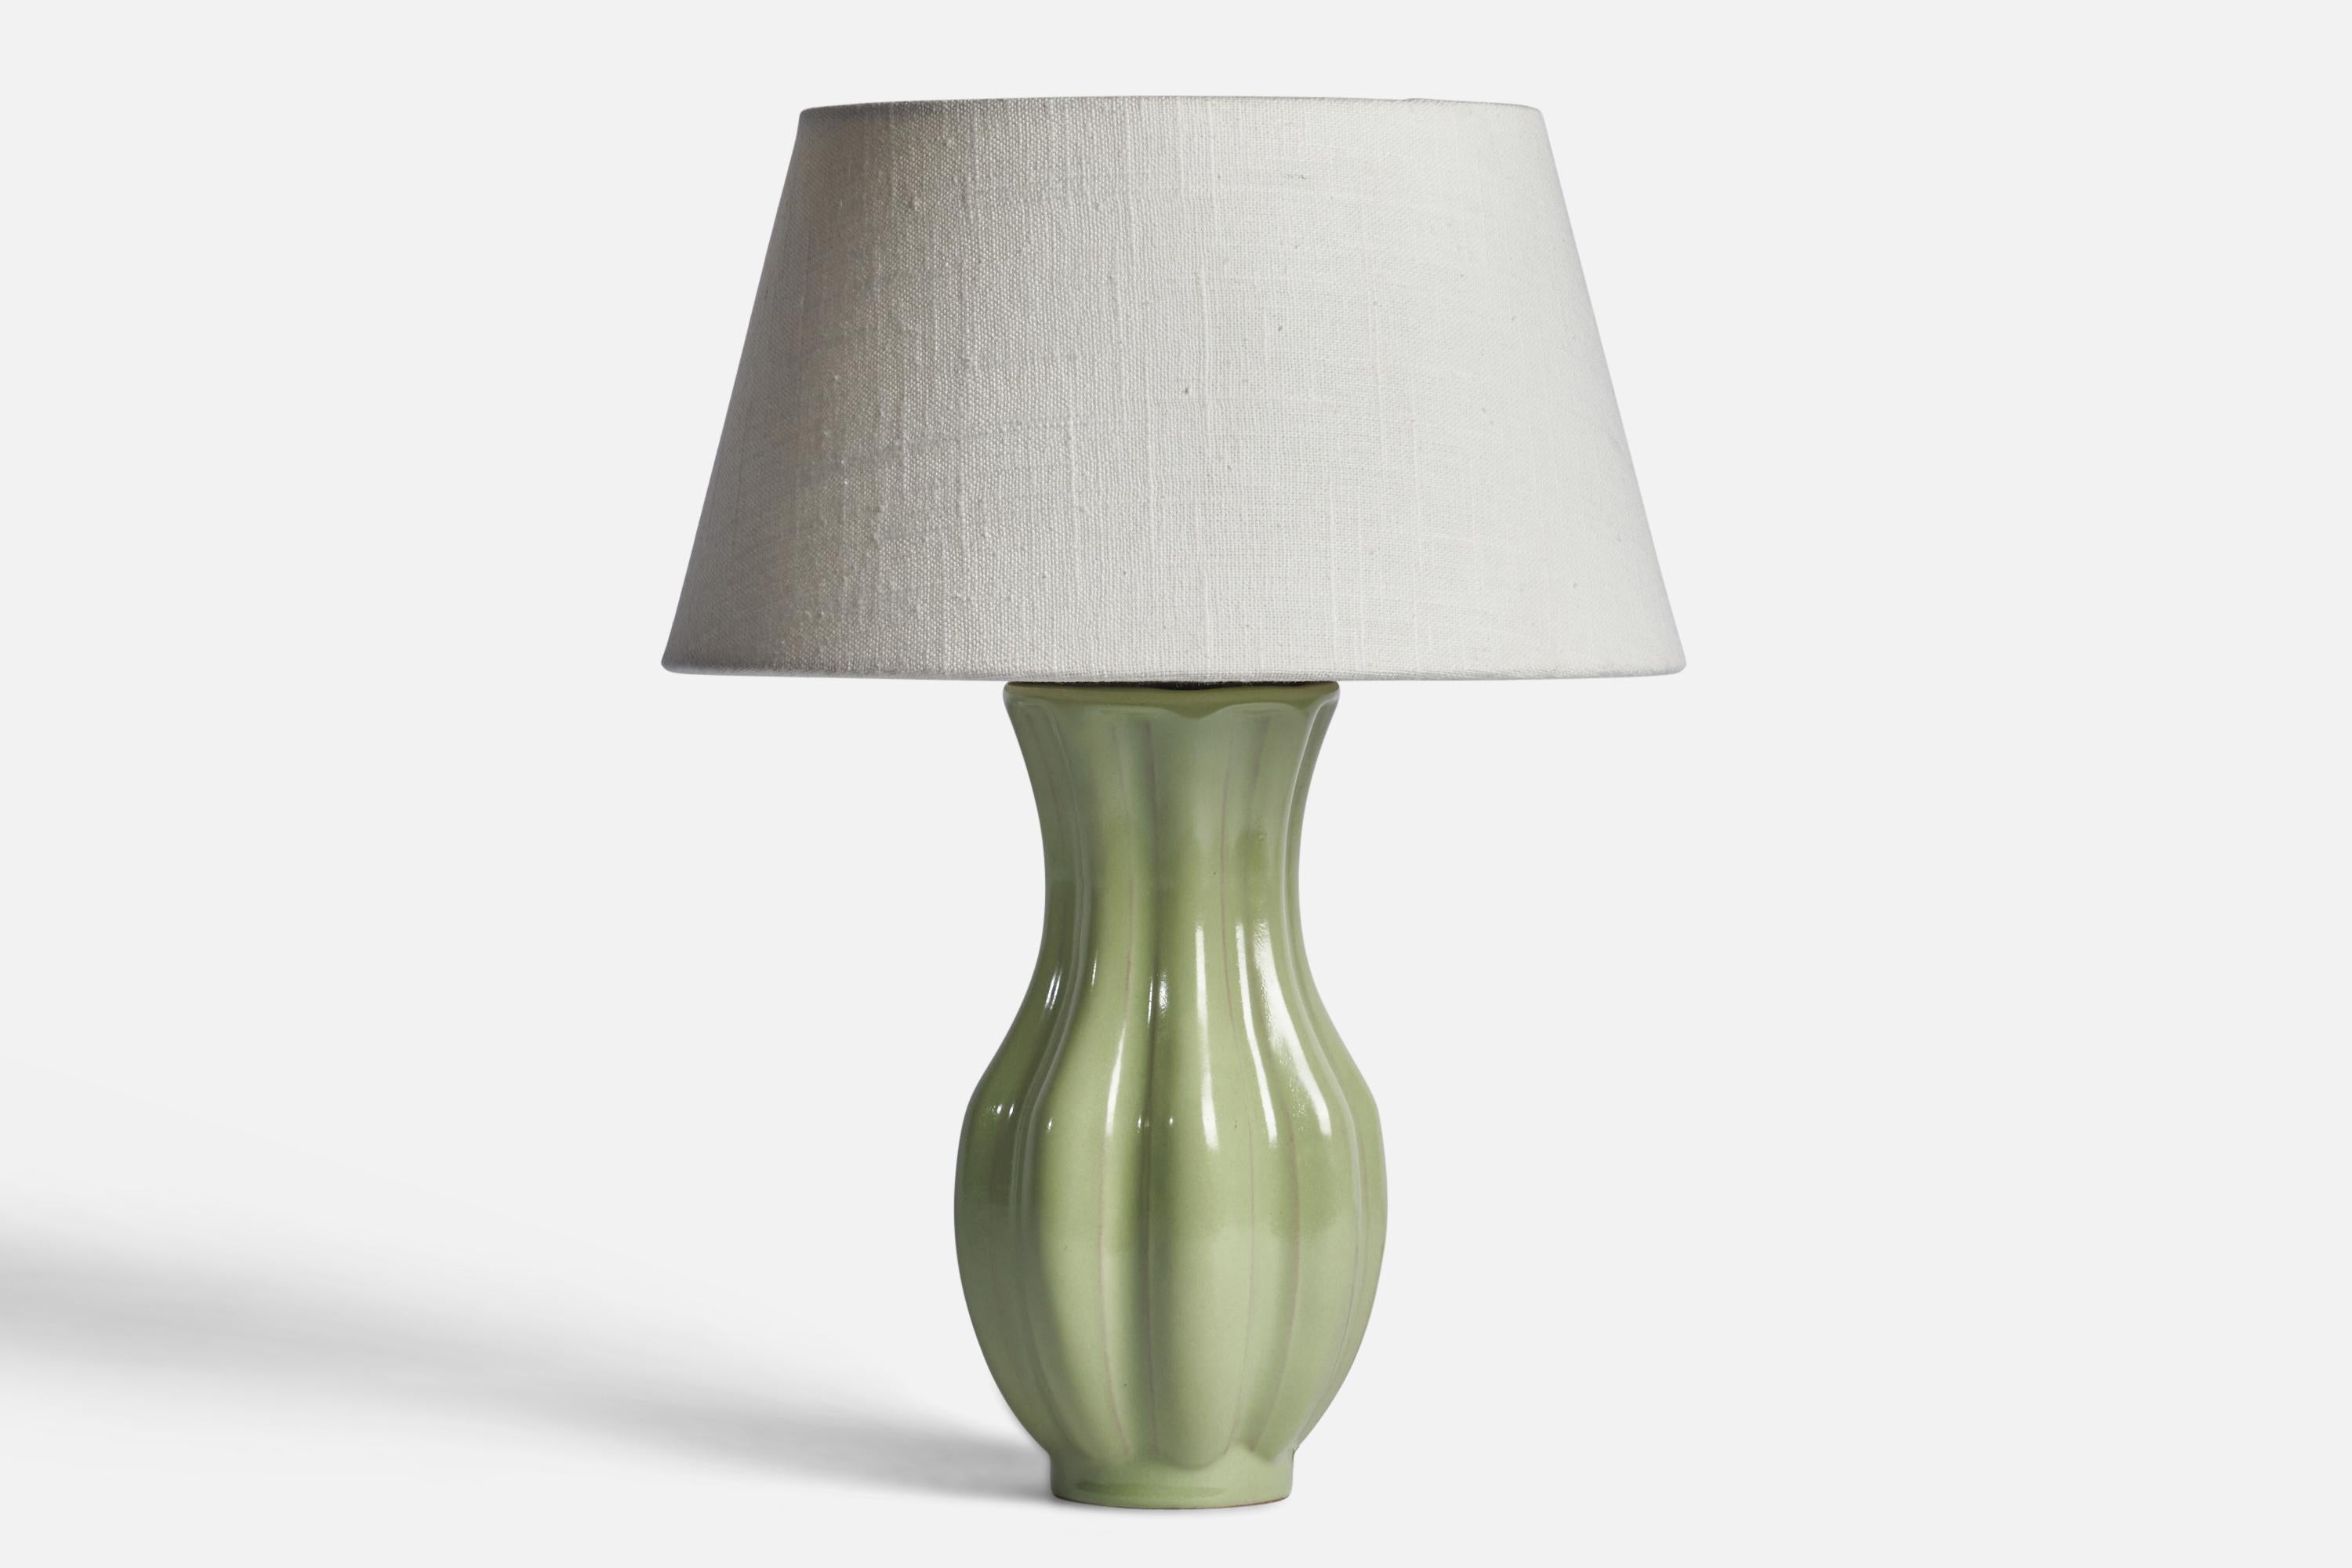 Lampe de table en faïence verte et cannelée, conçue et produite par Upsala Ekeby, Suède, années 1930.

Dimensions de la lampe (pouces) : 10.25